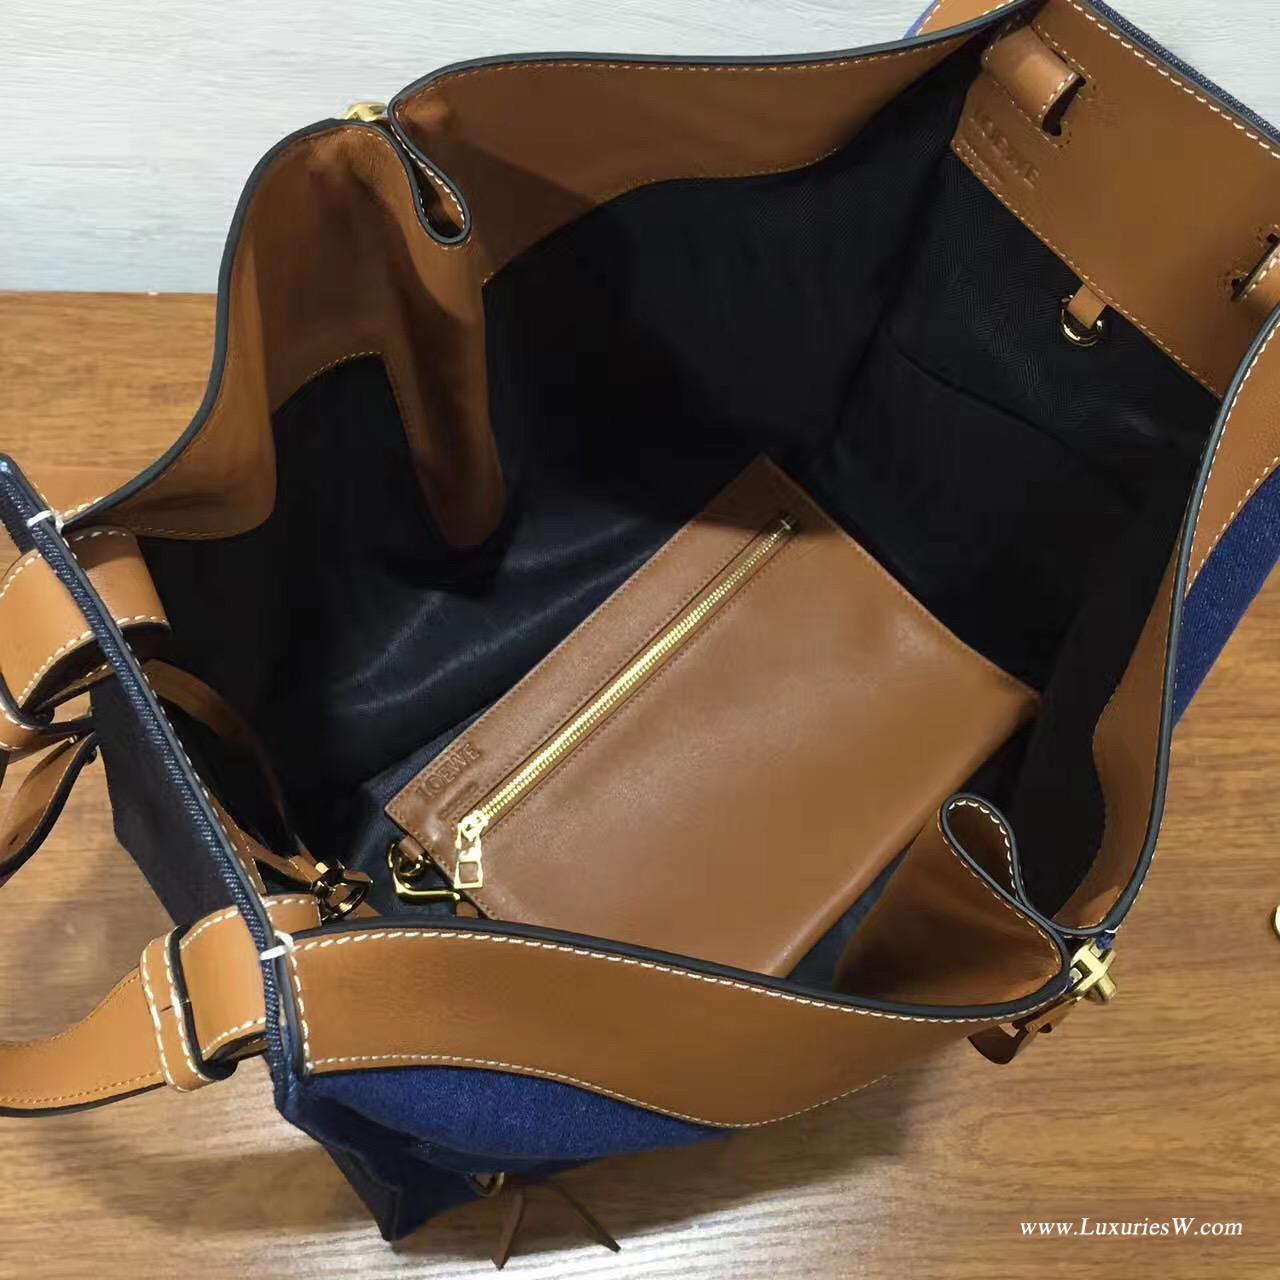 羅意威 Hammock bag 2017春夏 牛皮搭配牛仔拼接系列大號吊床包